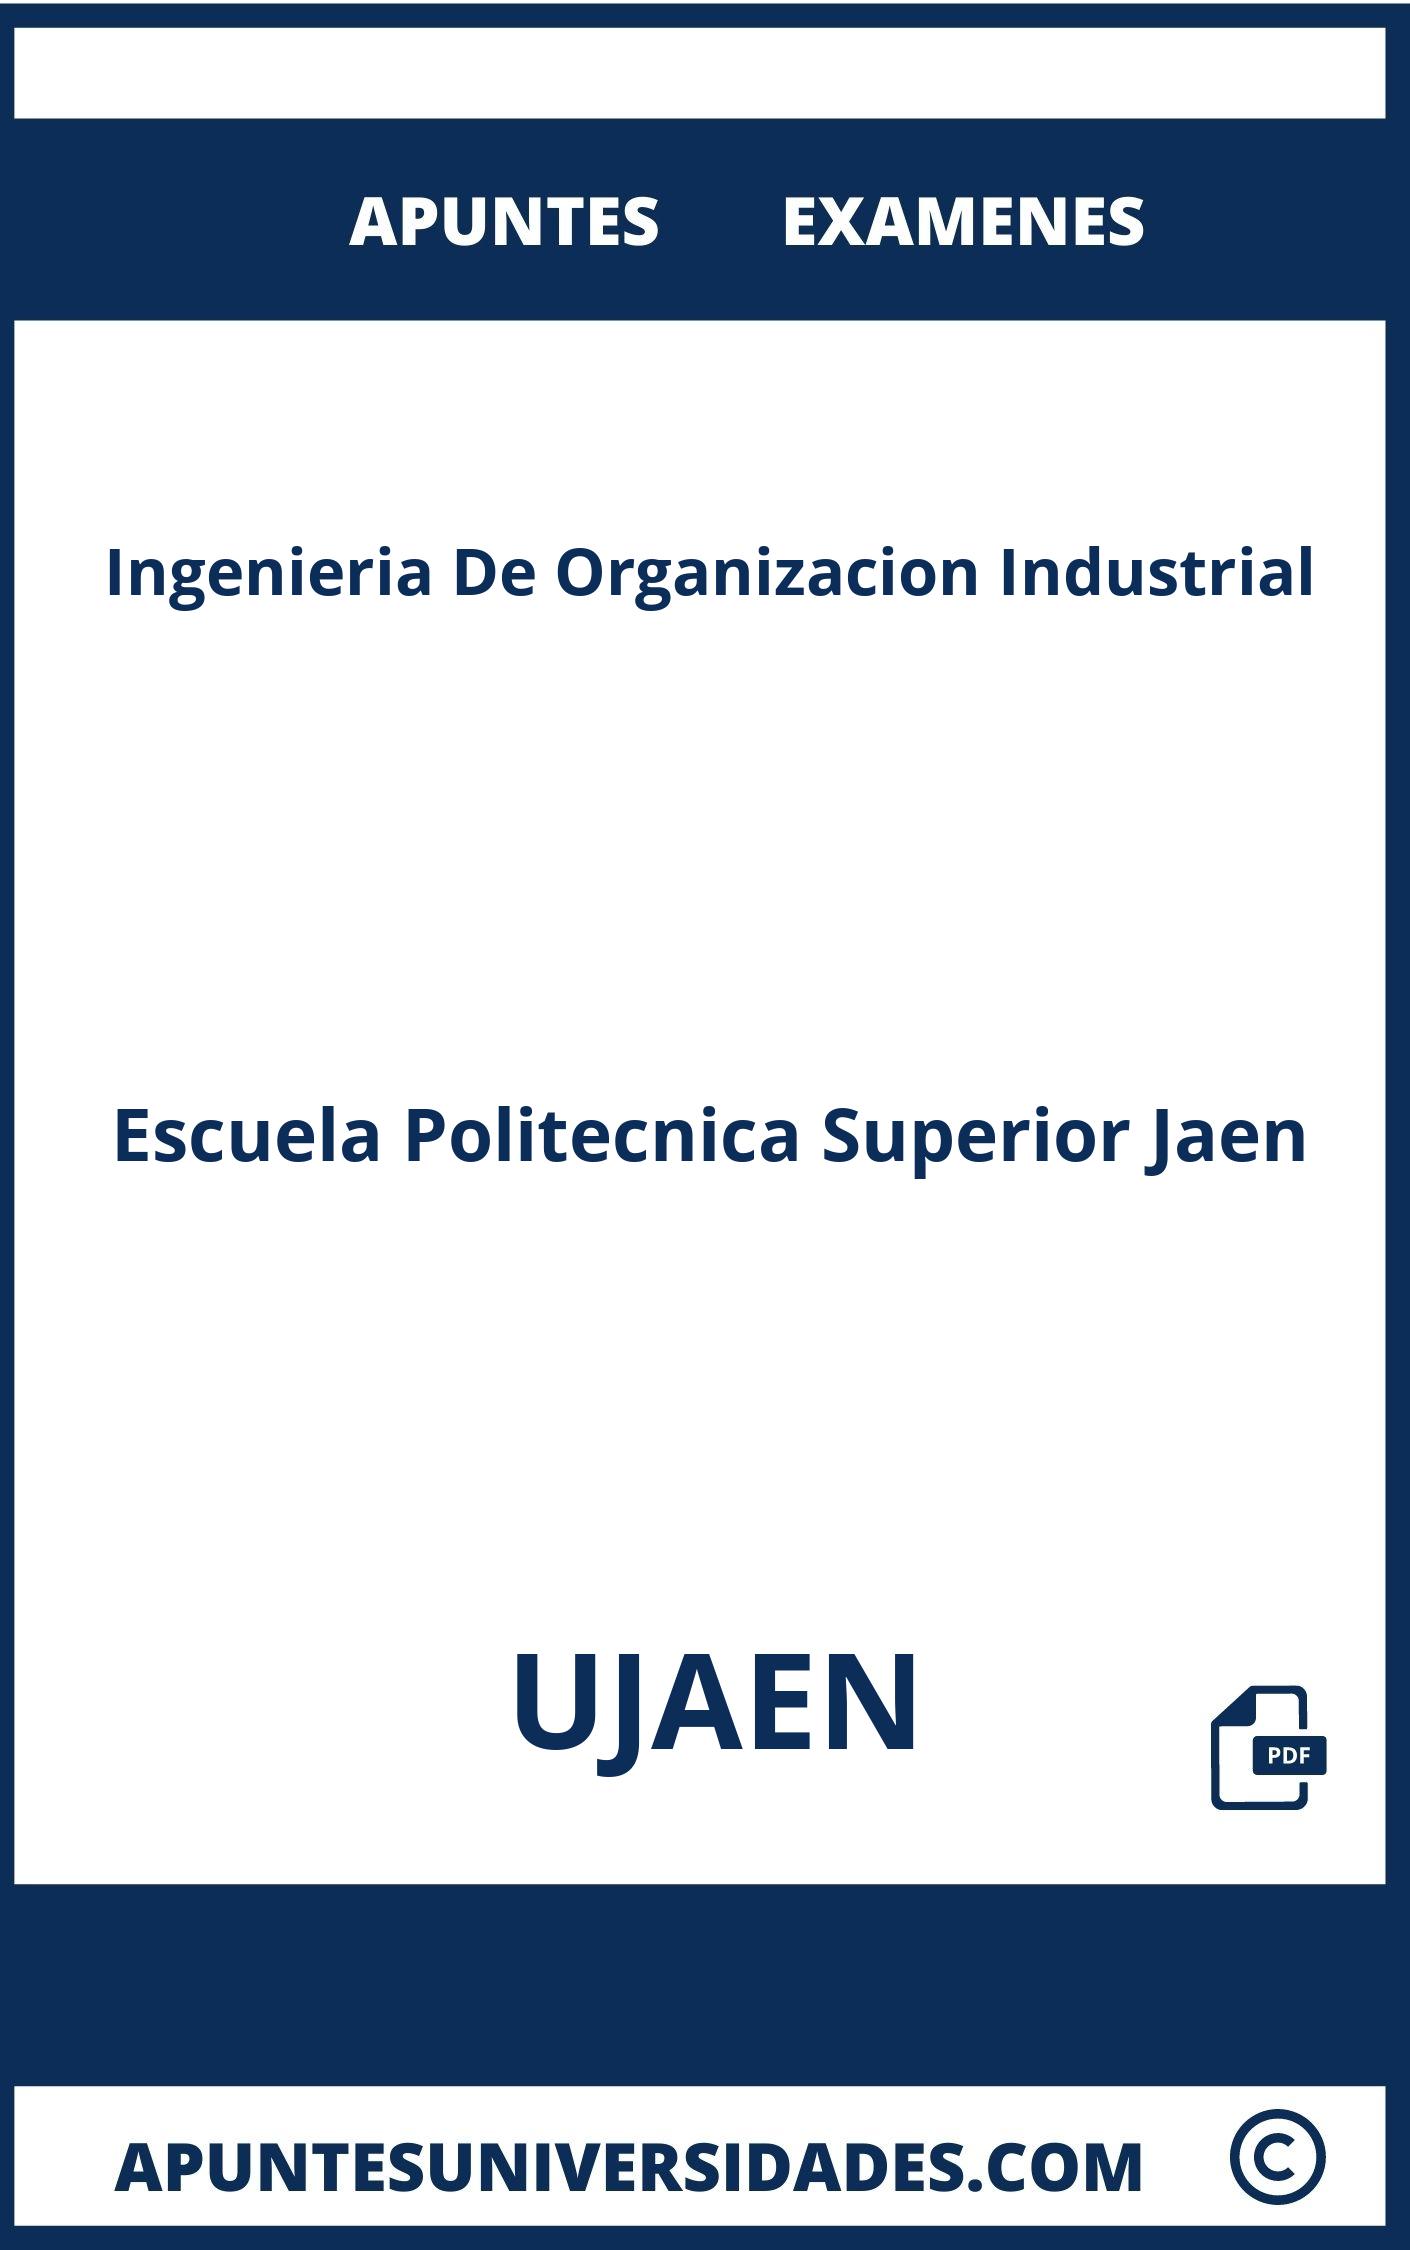 Examenes y Apuntes de Ingenieria De Organizacion Industrial UJAEN